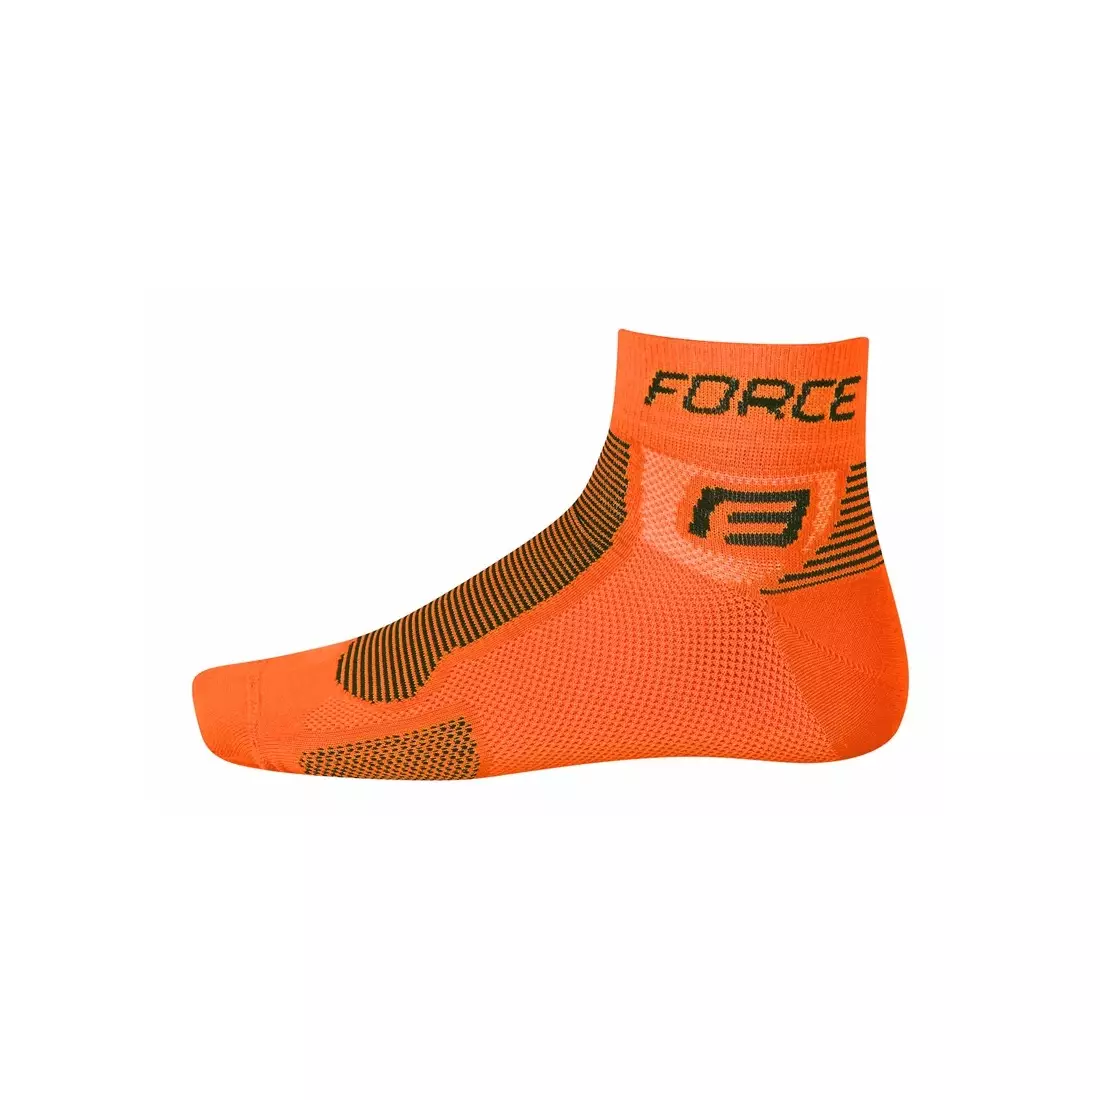 FORCE socks 9010, color: orange